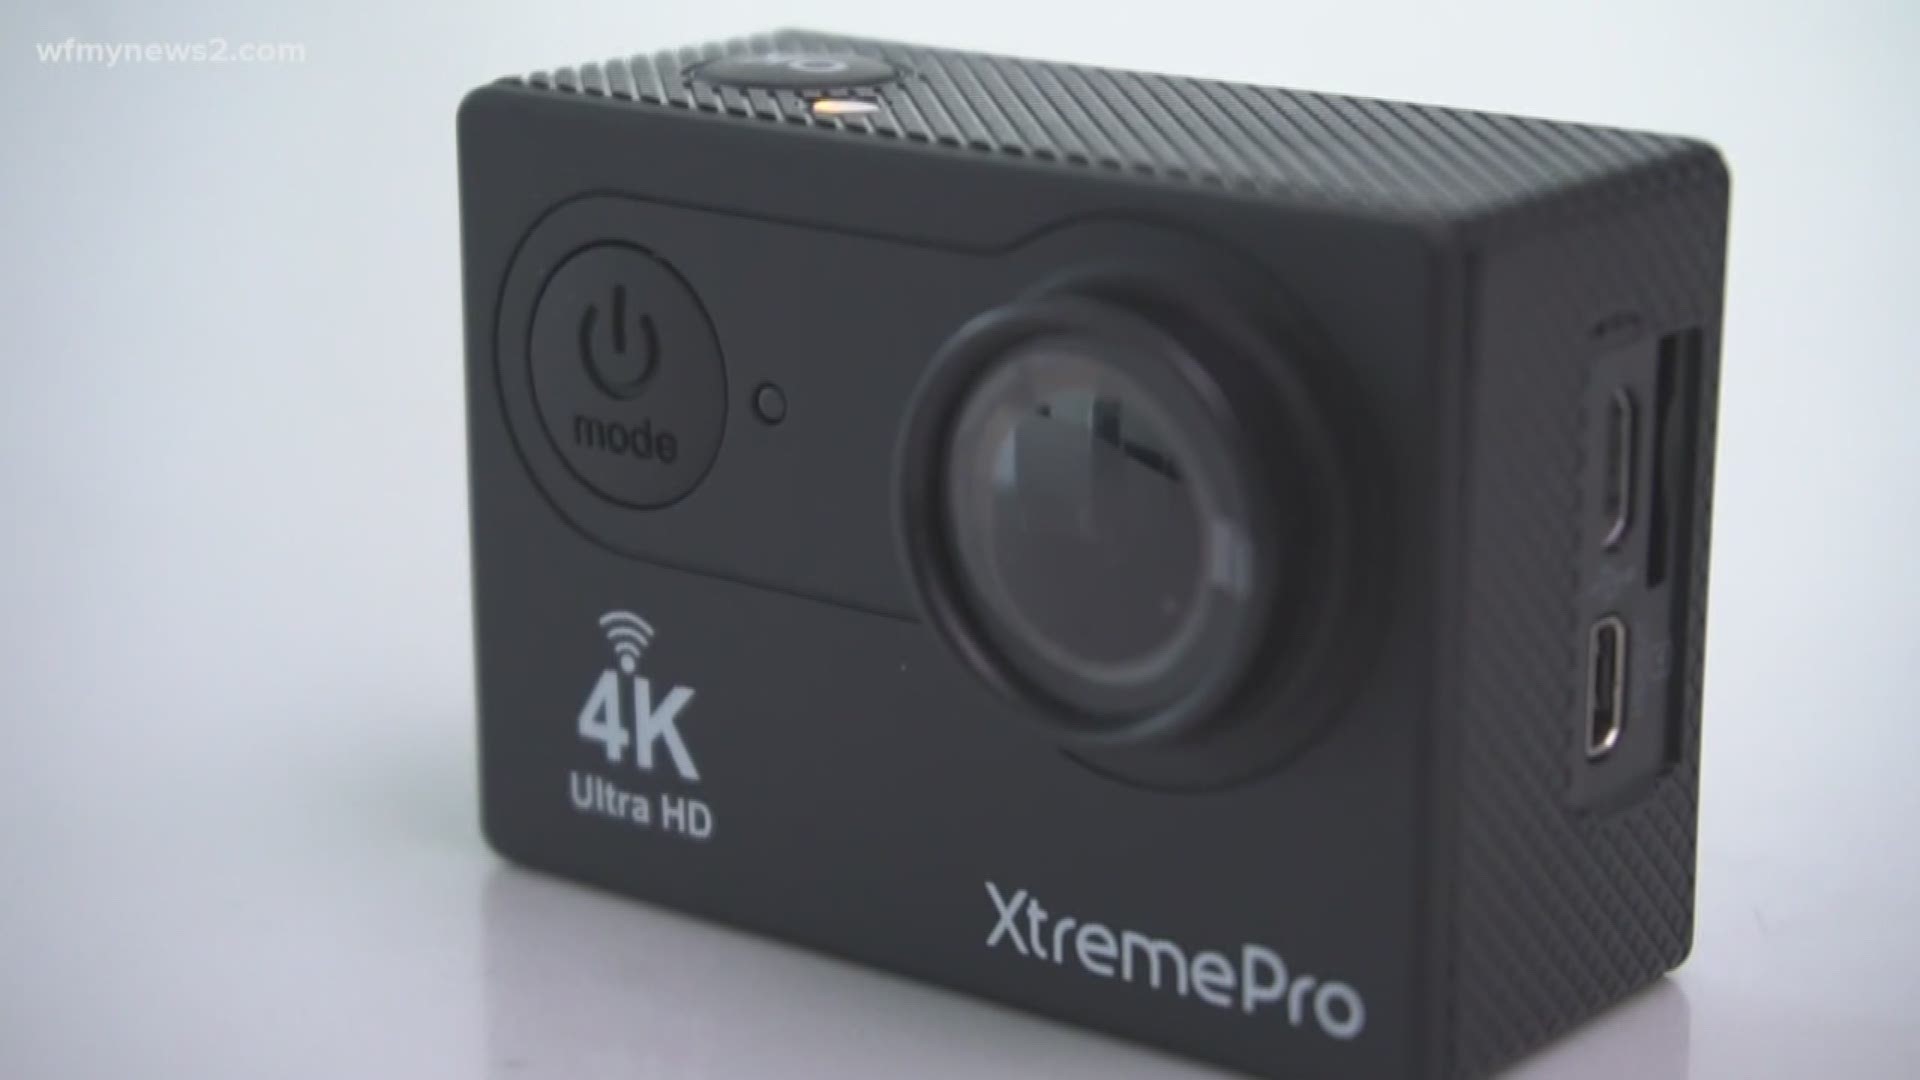 Ways To Save: 4K Camera